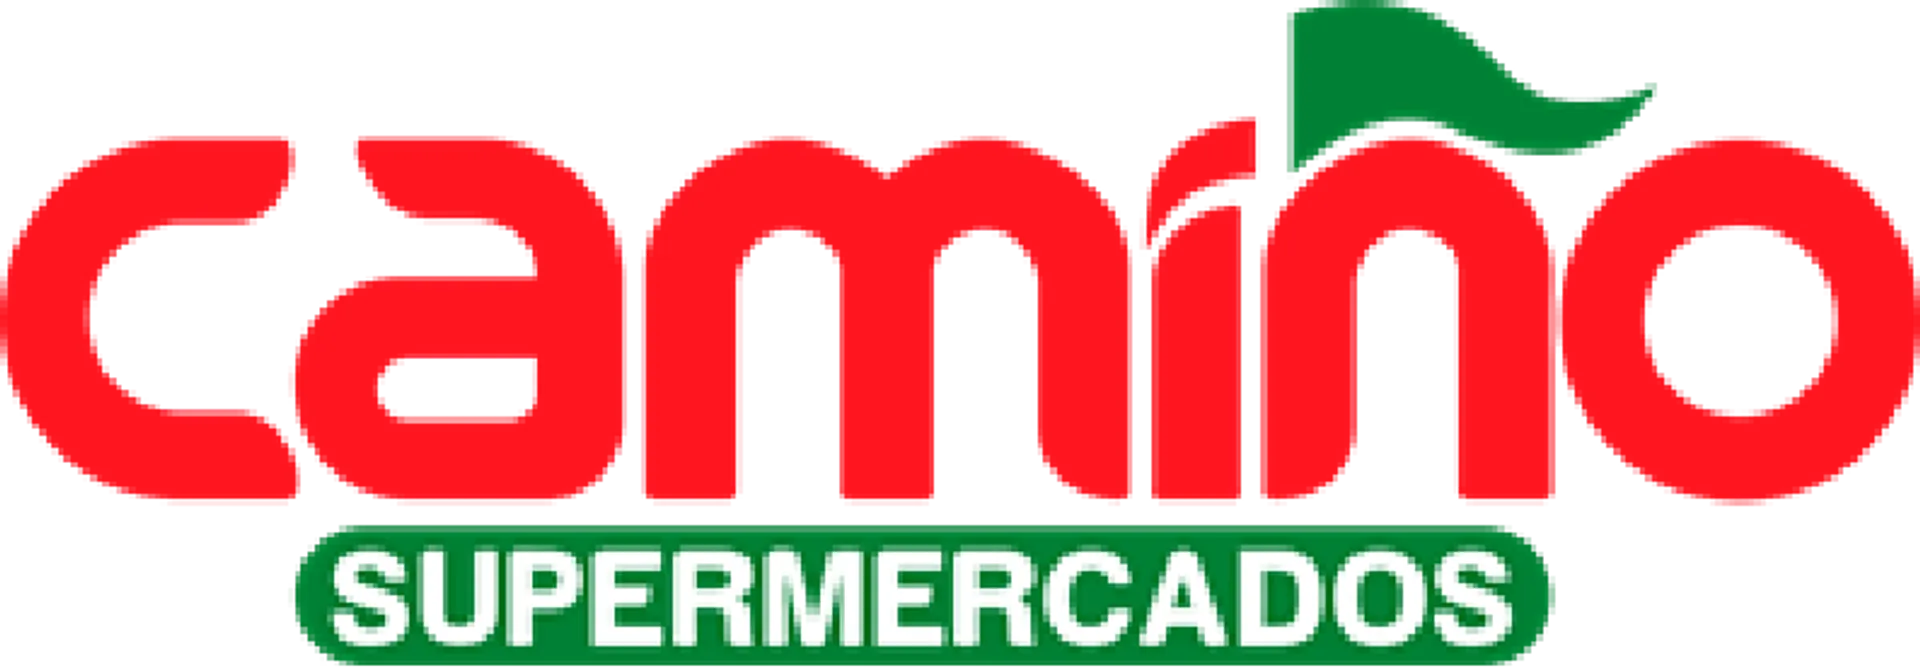 CAMIÑO SUPERMERCADOS logo